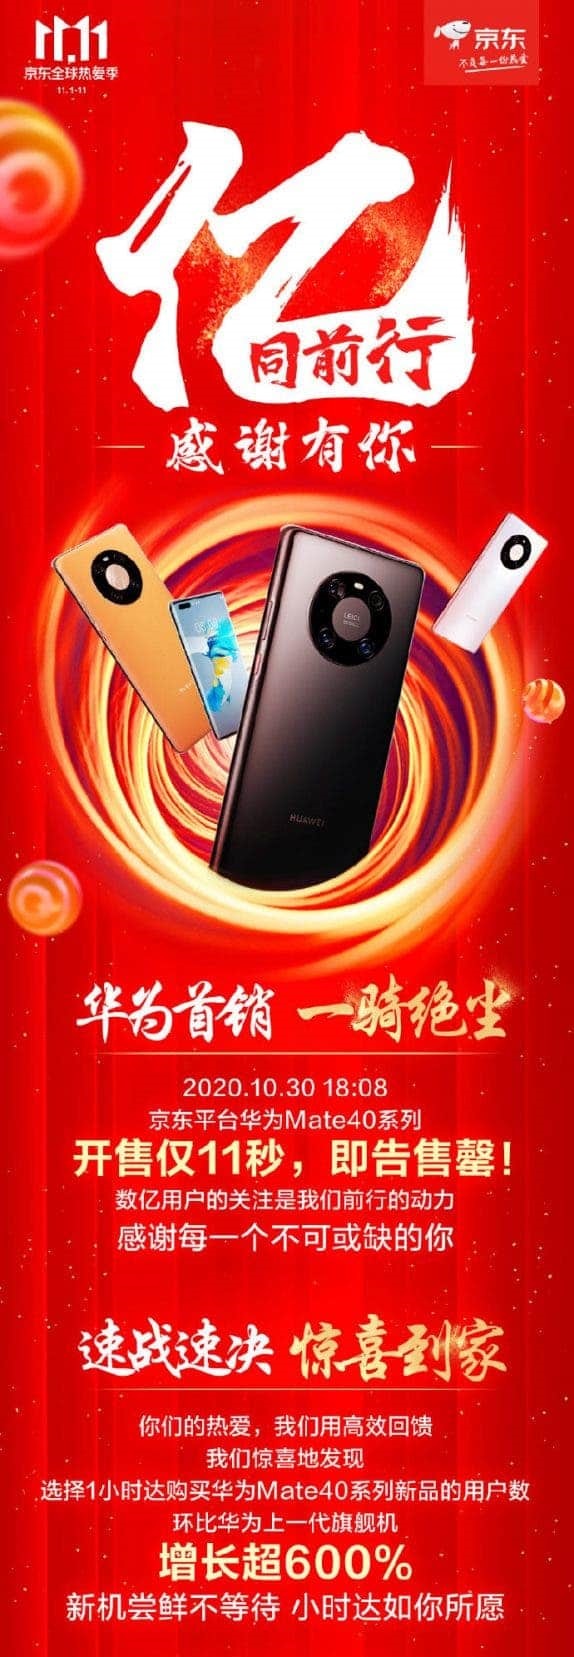 Huawei-Mate-40-22555-scaled.jpg